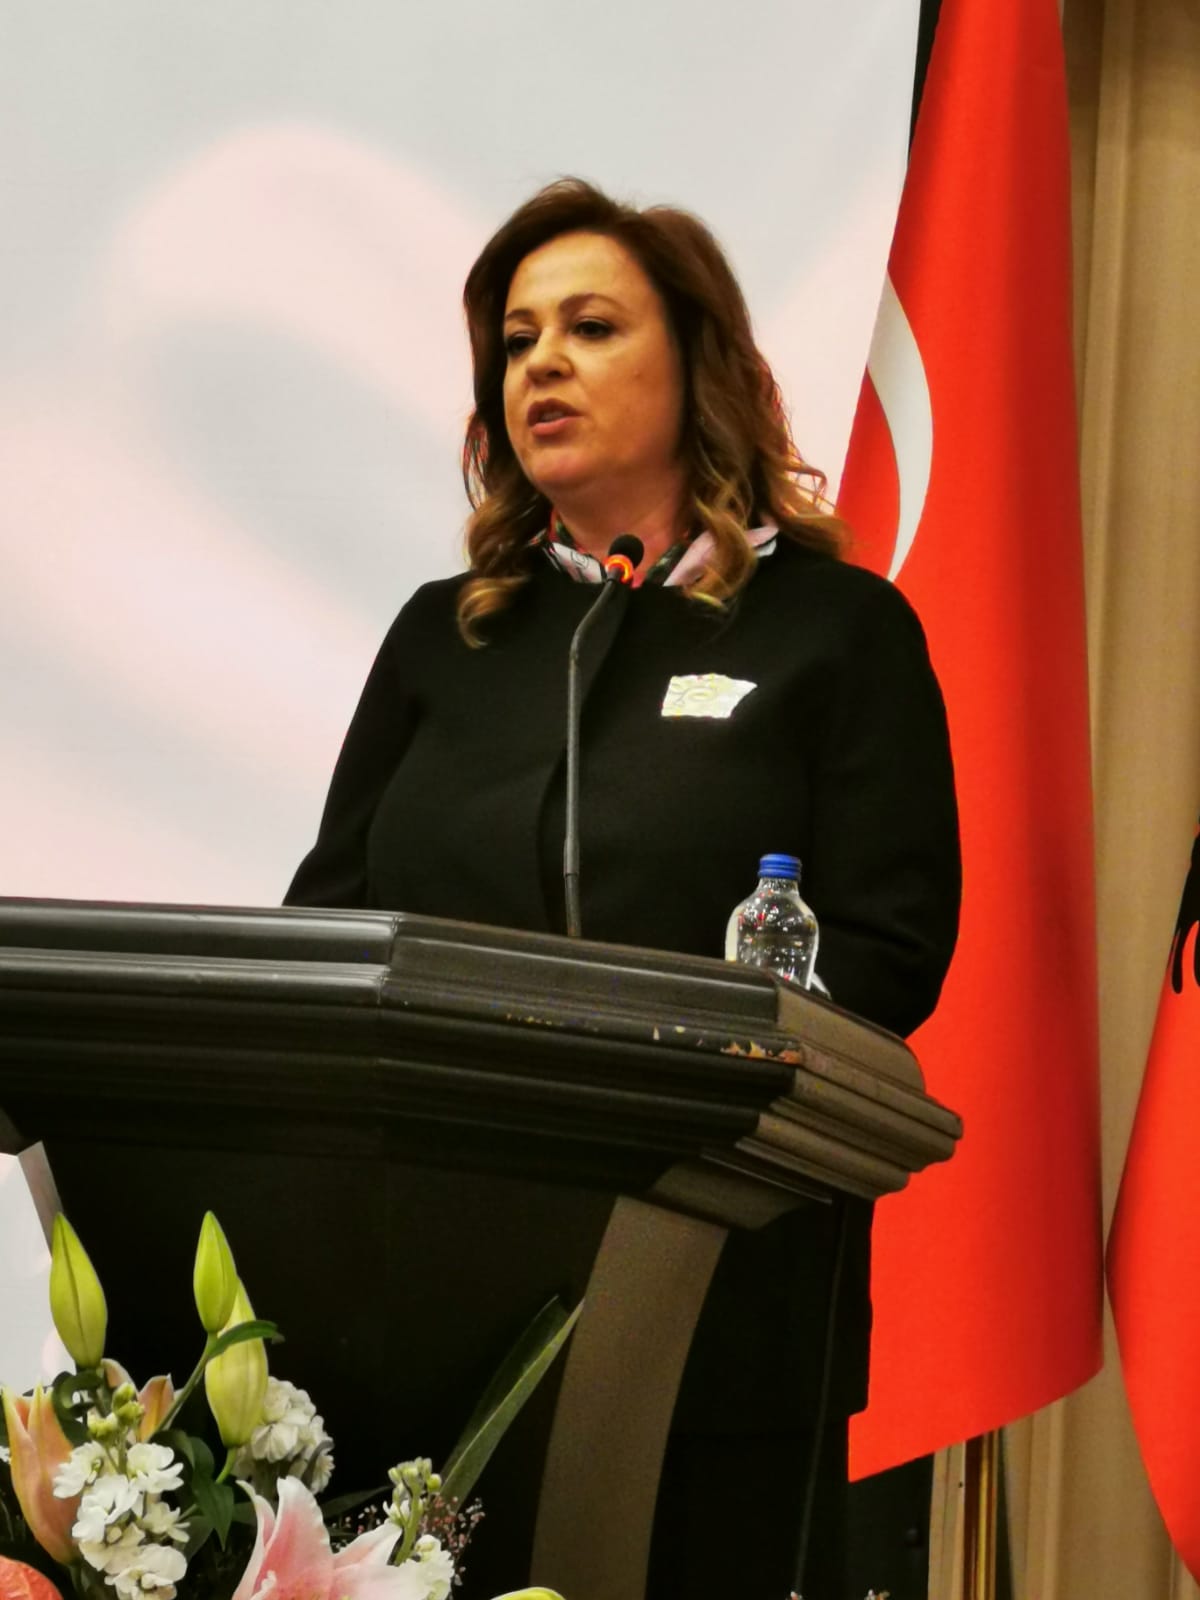 Arnavutluk İstanbul Başkonsolosu Blerta Kadzadej Reseps